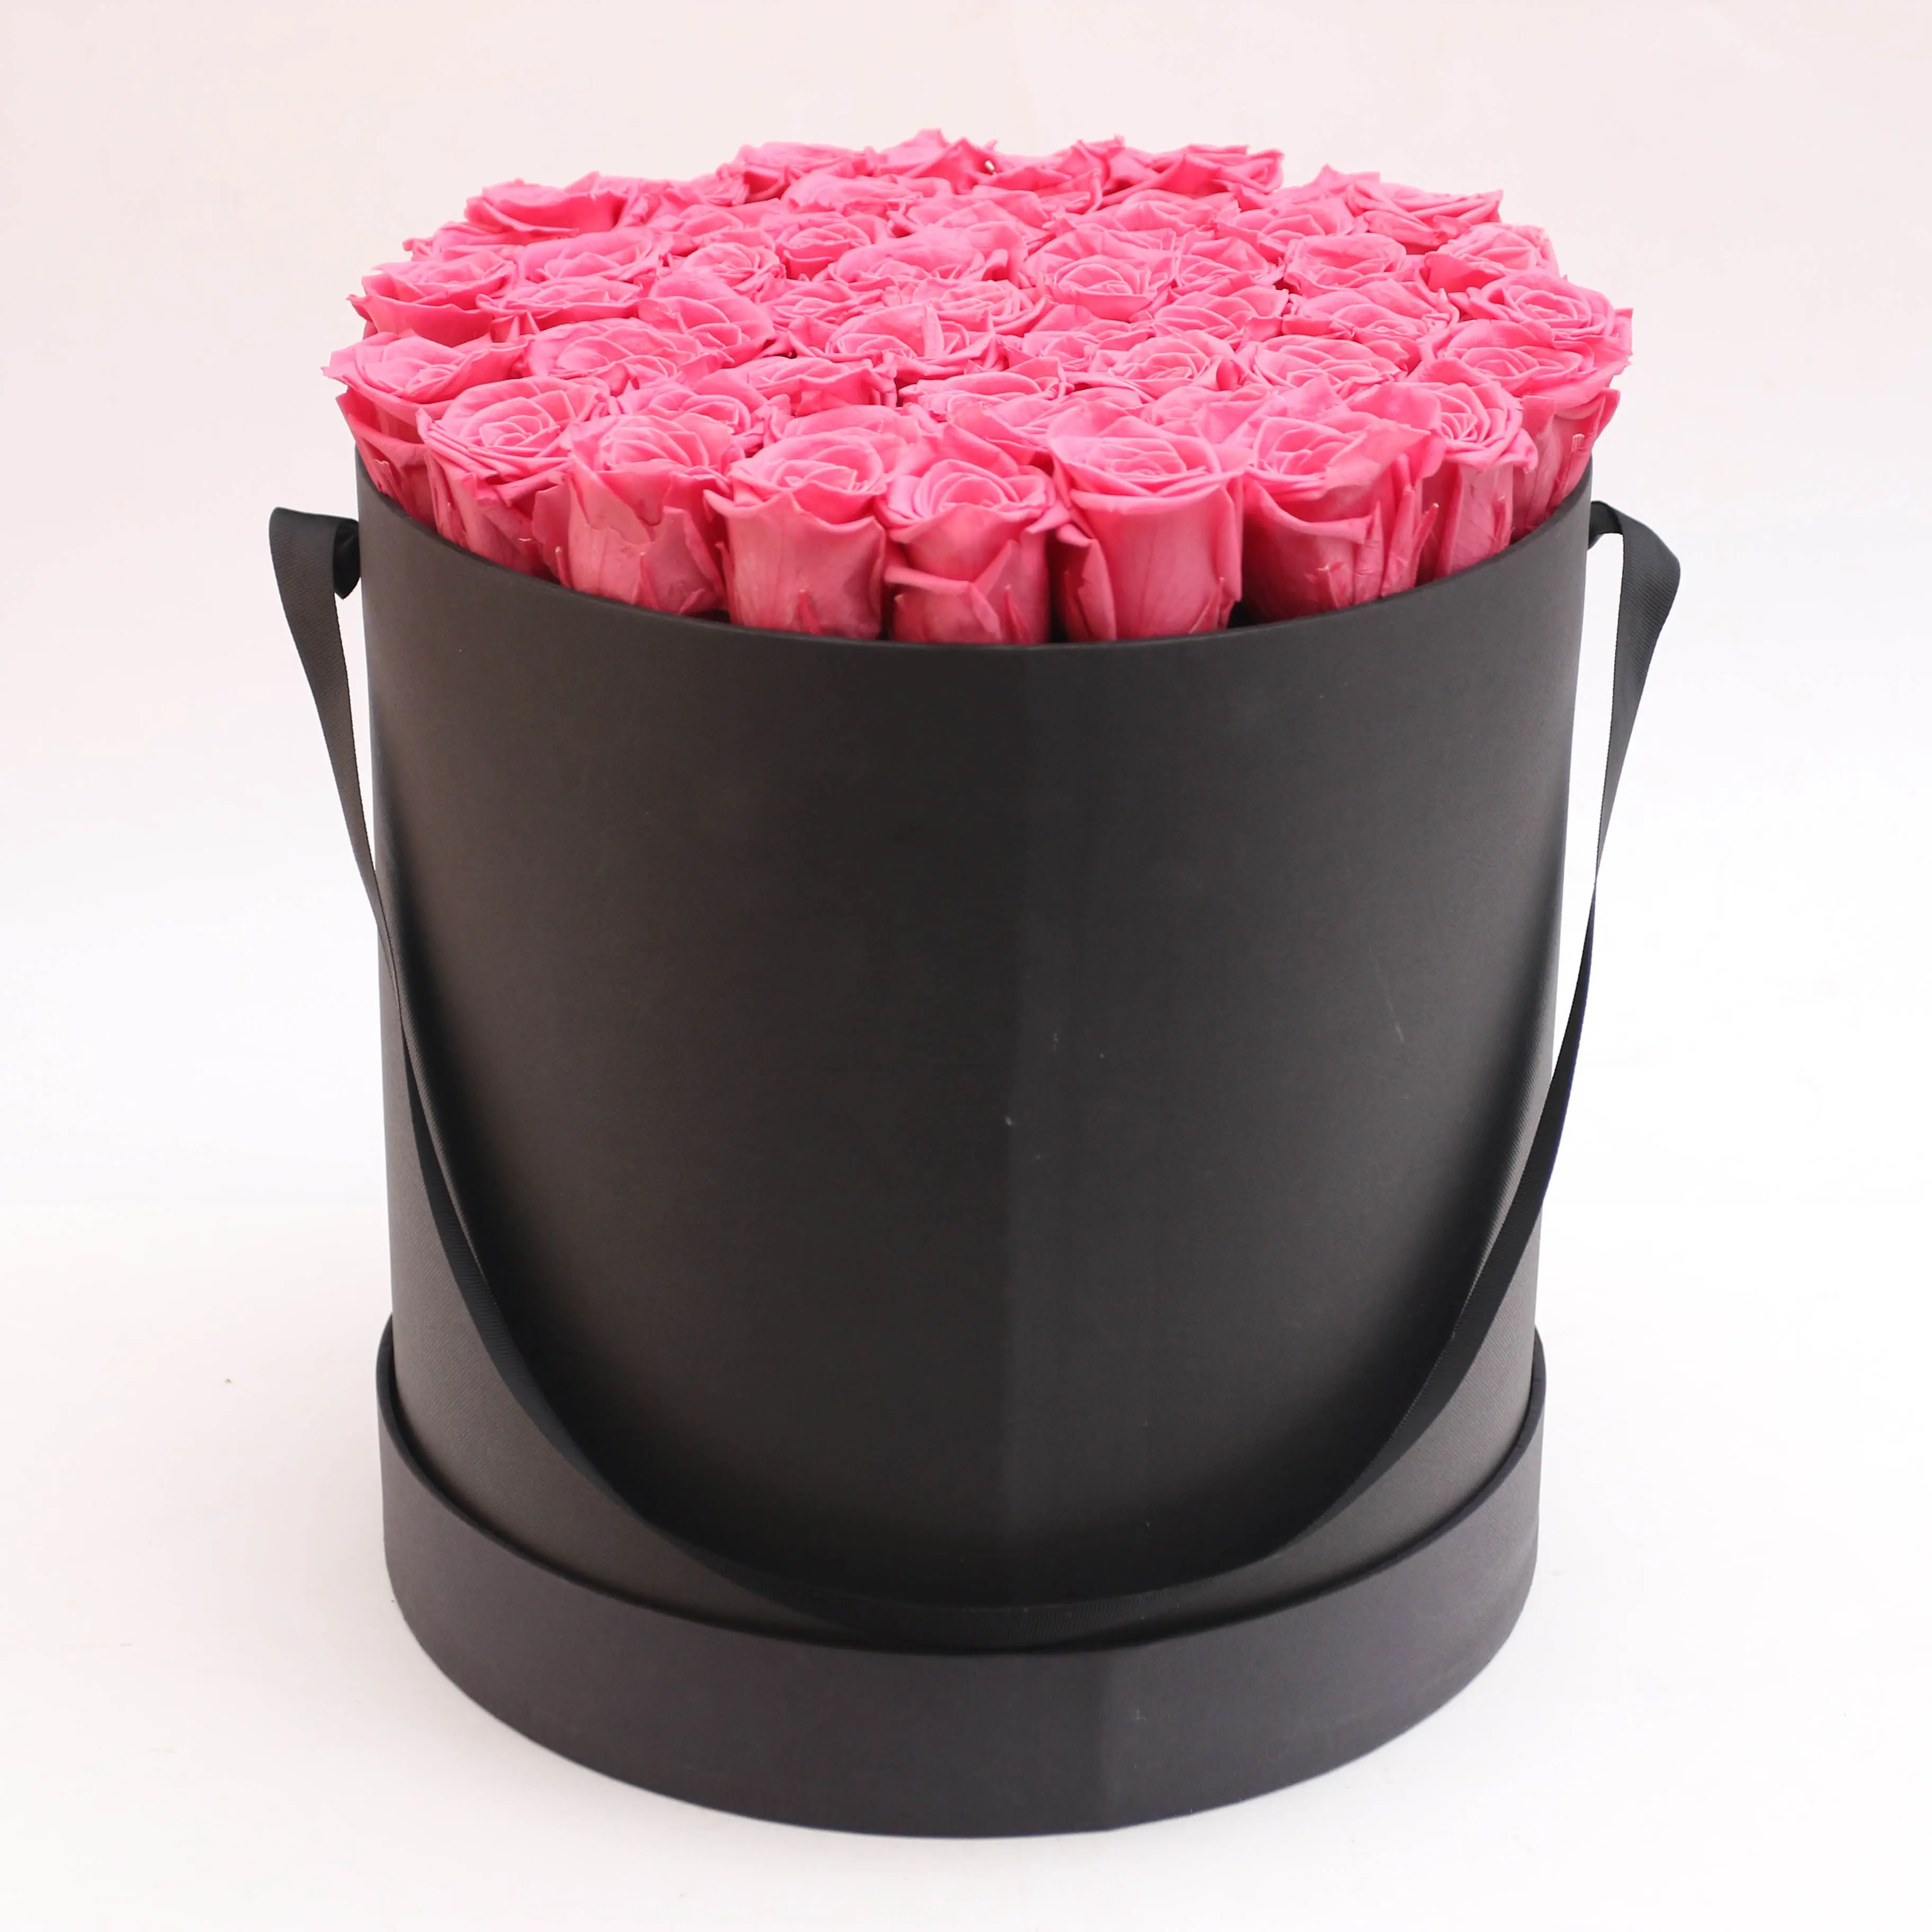 Mewah Bunga Abadi Rose Kotak Paling Populer Abadi Rose Di Kotak Diawetkan Kotak Hadiah untuk Teman Keluarga